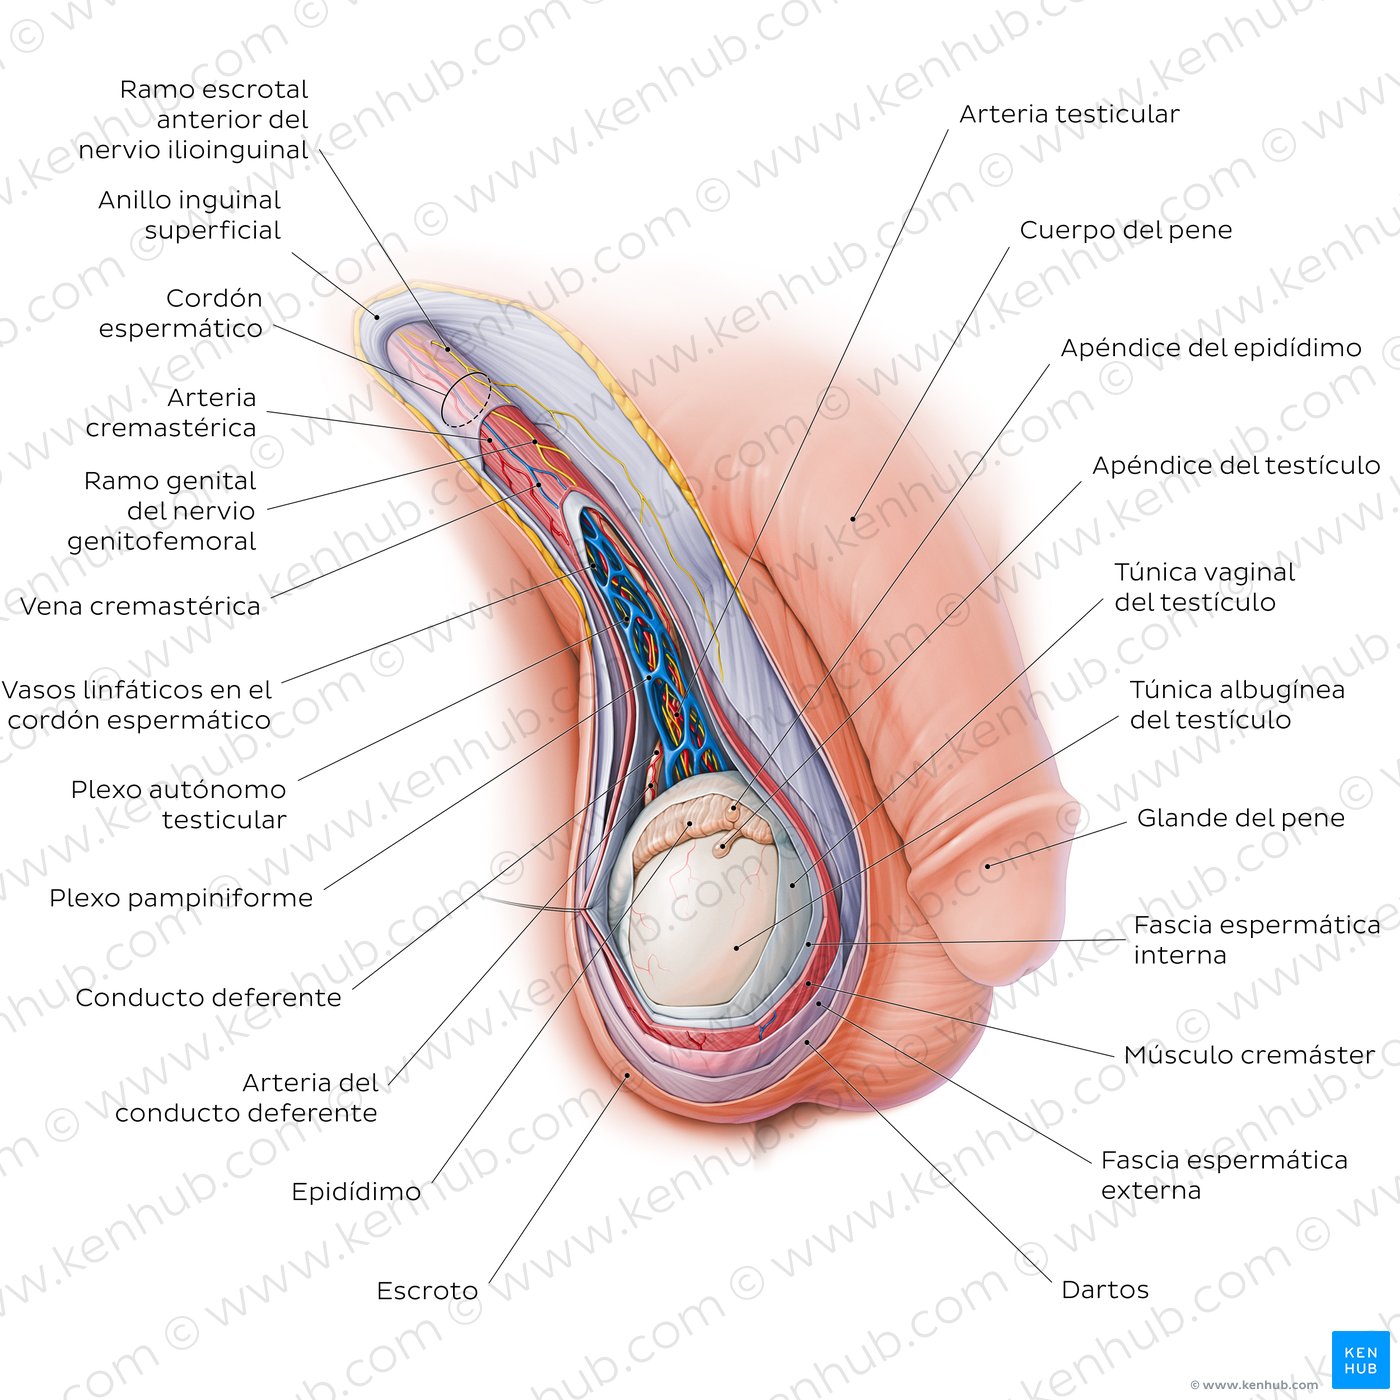 Anatomía del escroto y cordón espermático